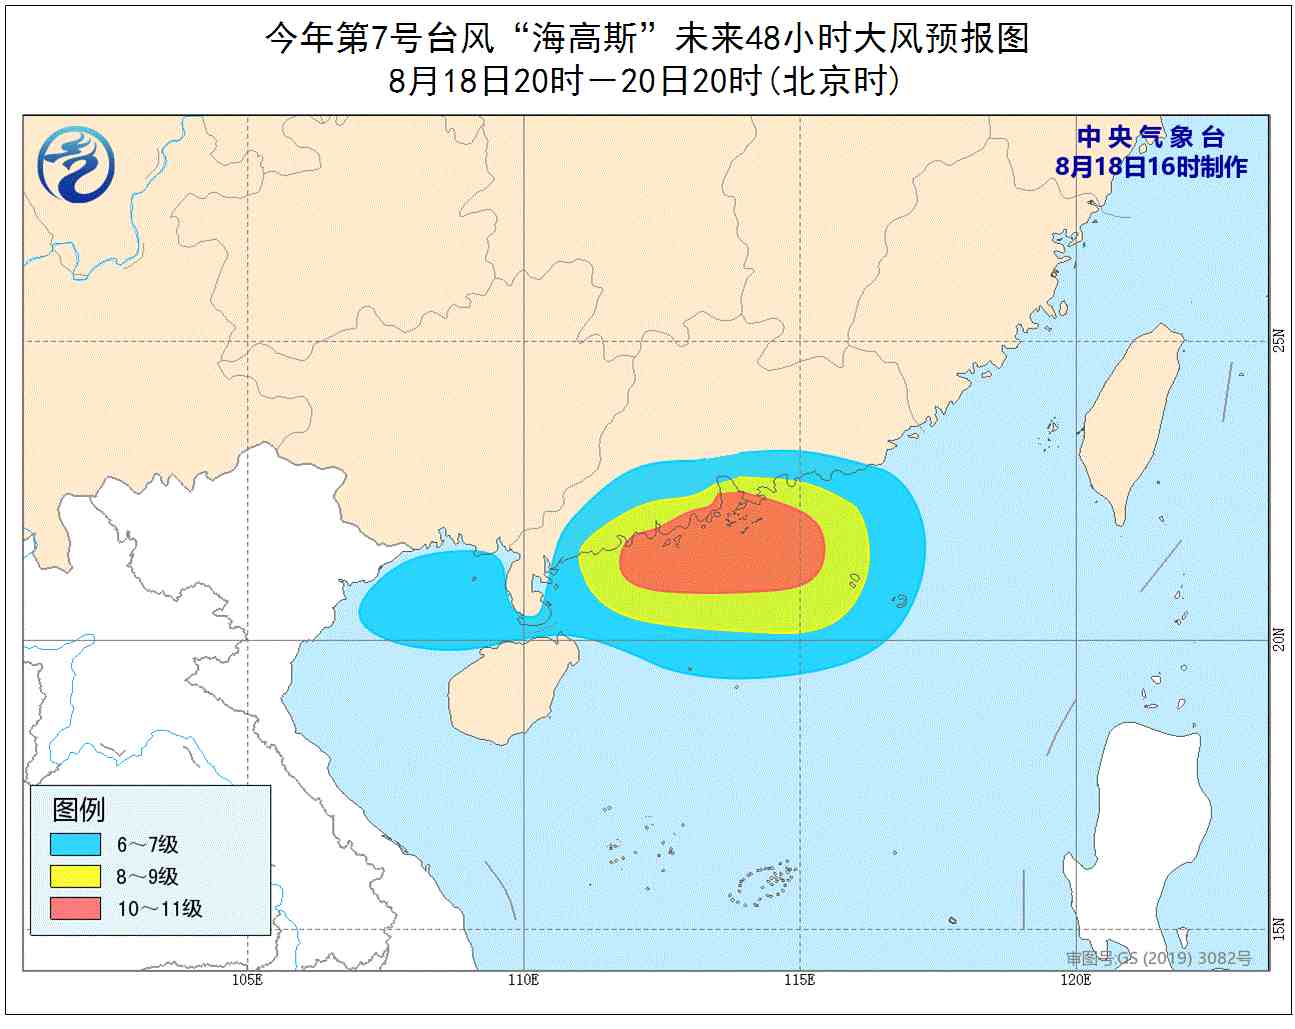 中央气象台升级发布台风橙色预警